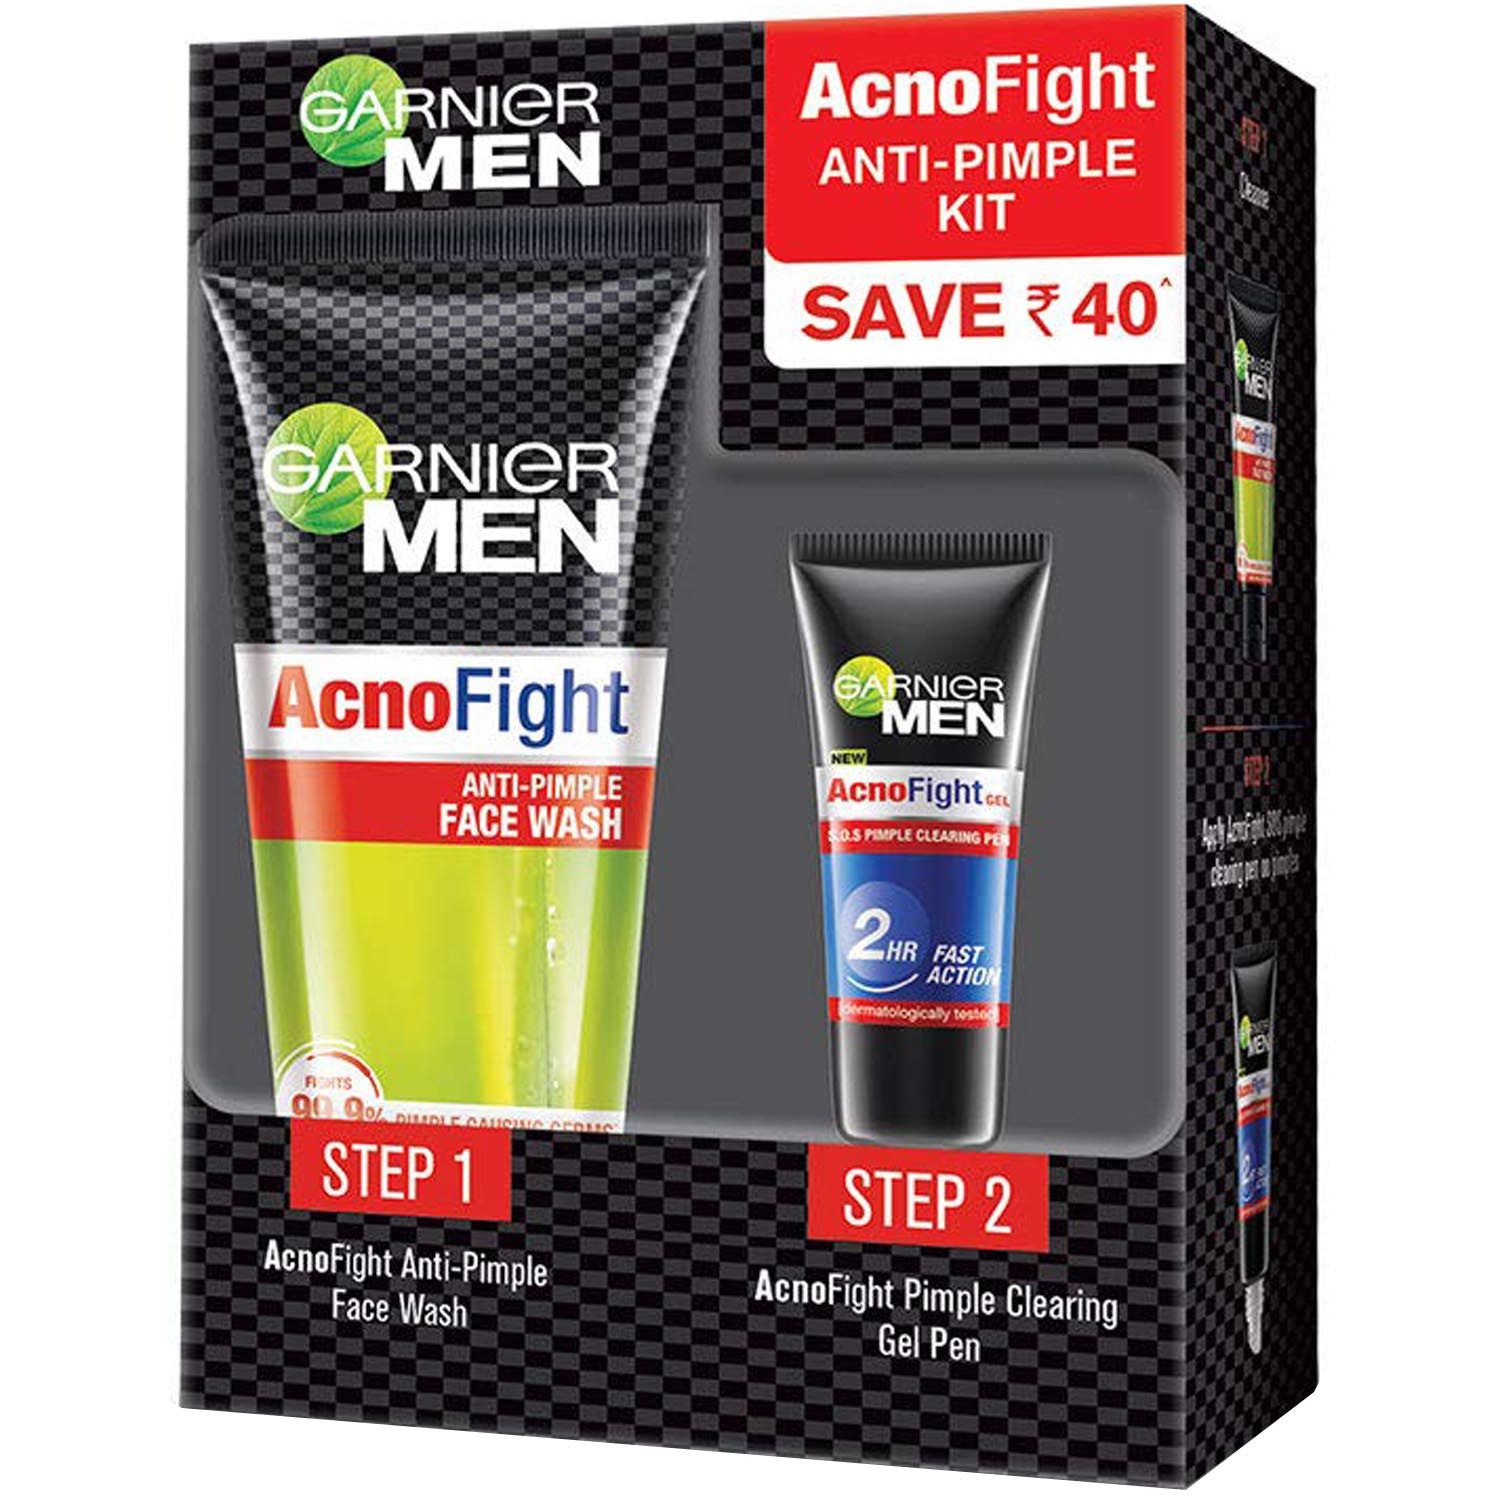 Buy Garnier Men Acno Fight Anti-Pimple kit, 1 Kit Online